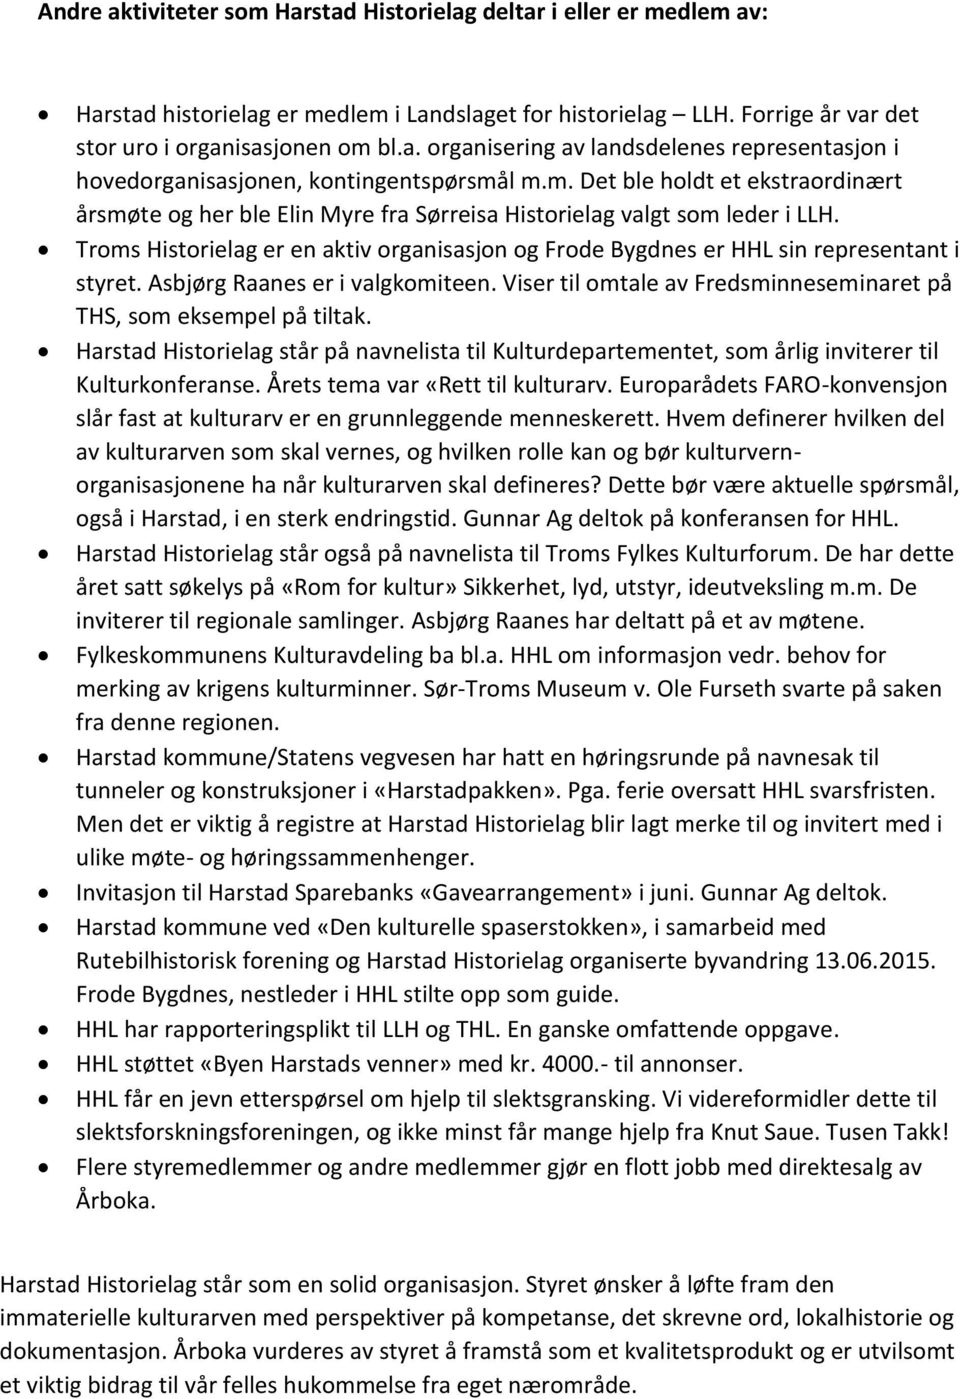 Troms Historielag er en aktiv organisasjon og Frode Bygdnes er HHL sin representant i styret. Asbjørg Raanes er i valgkomiteen. Viser til omtale av Fredsminneseminaret på THS, som eksempel på tiltak.